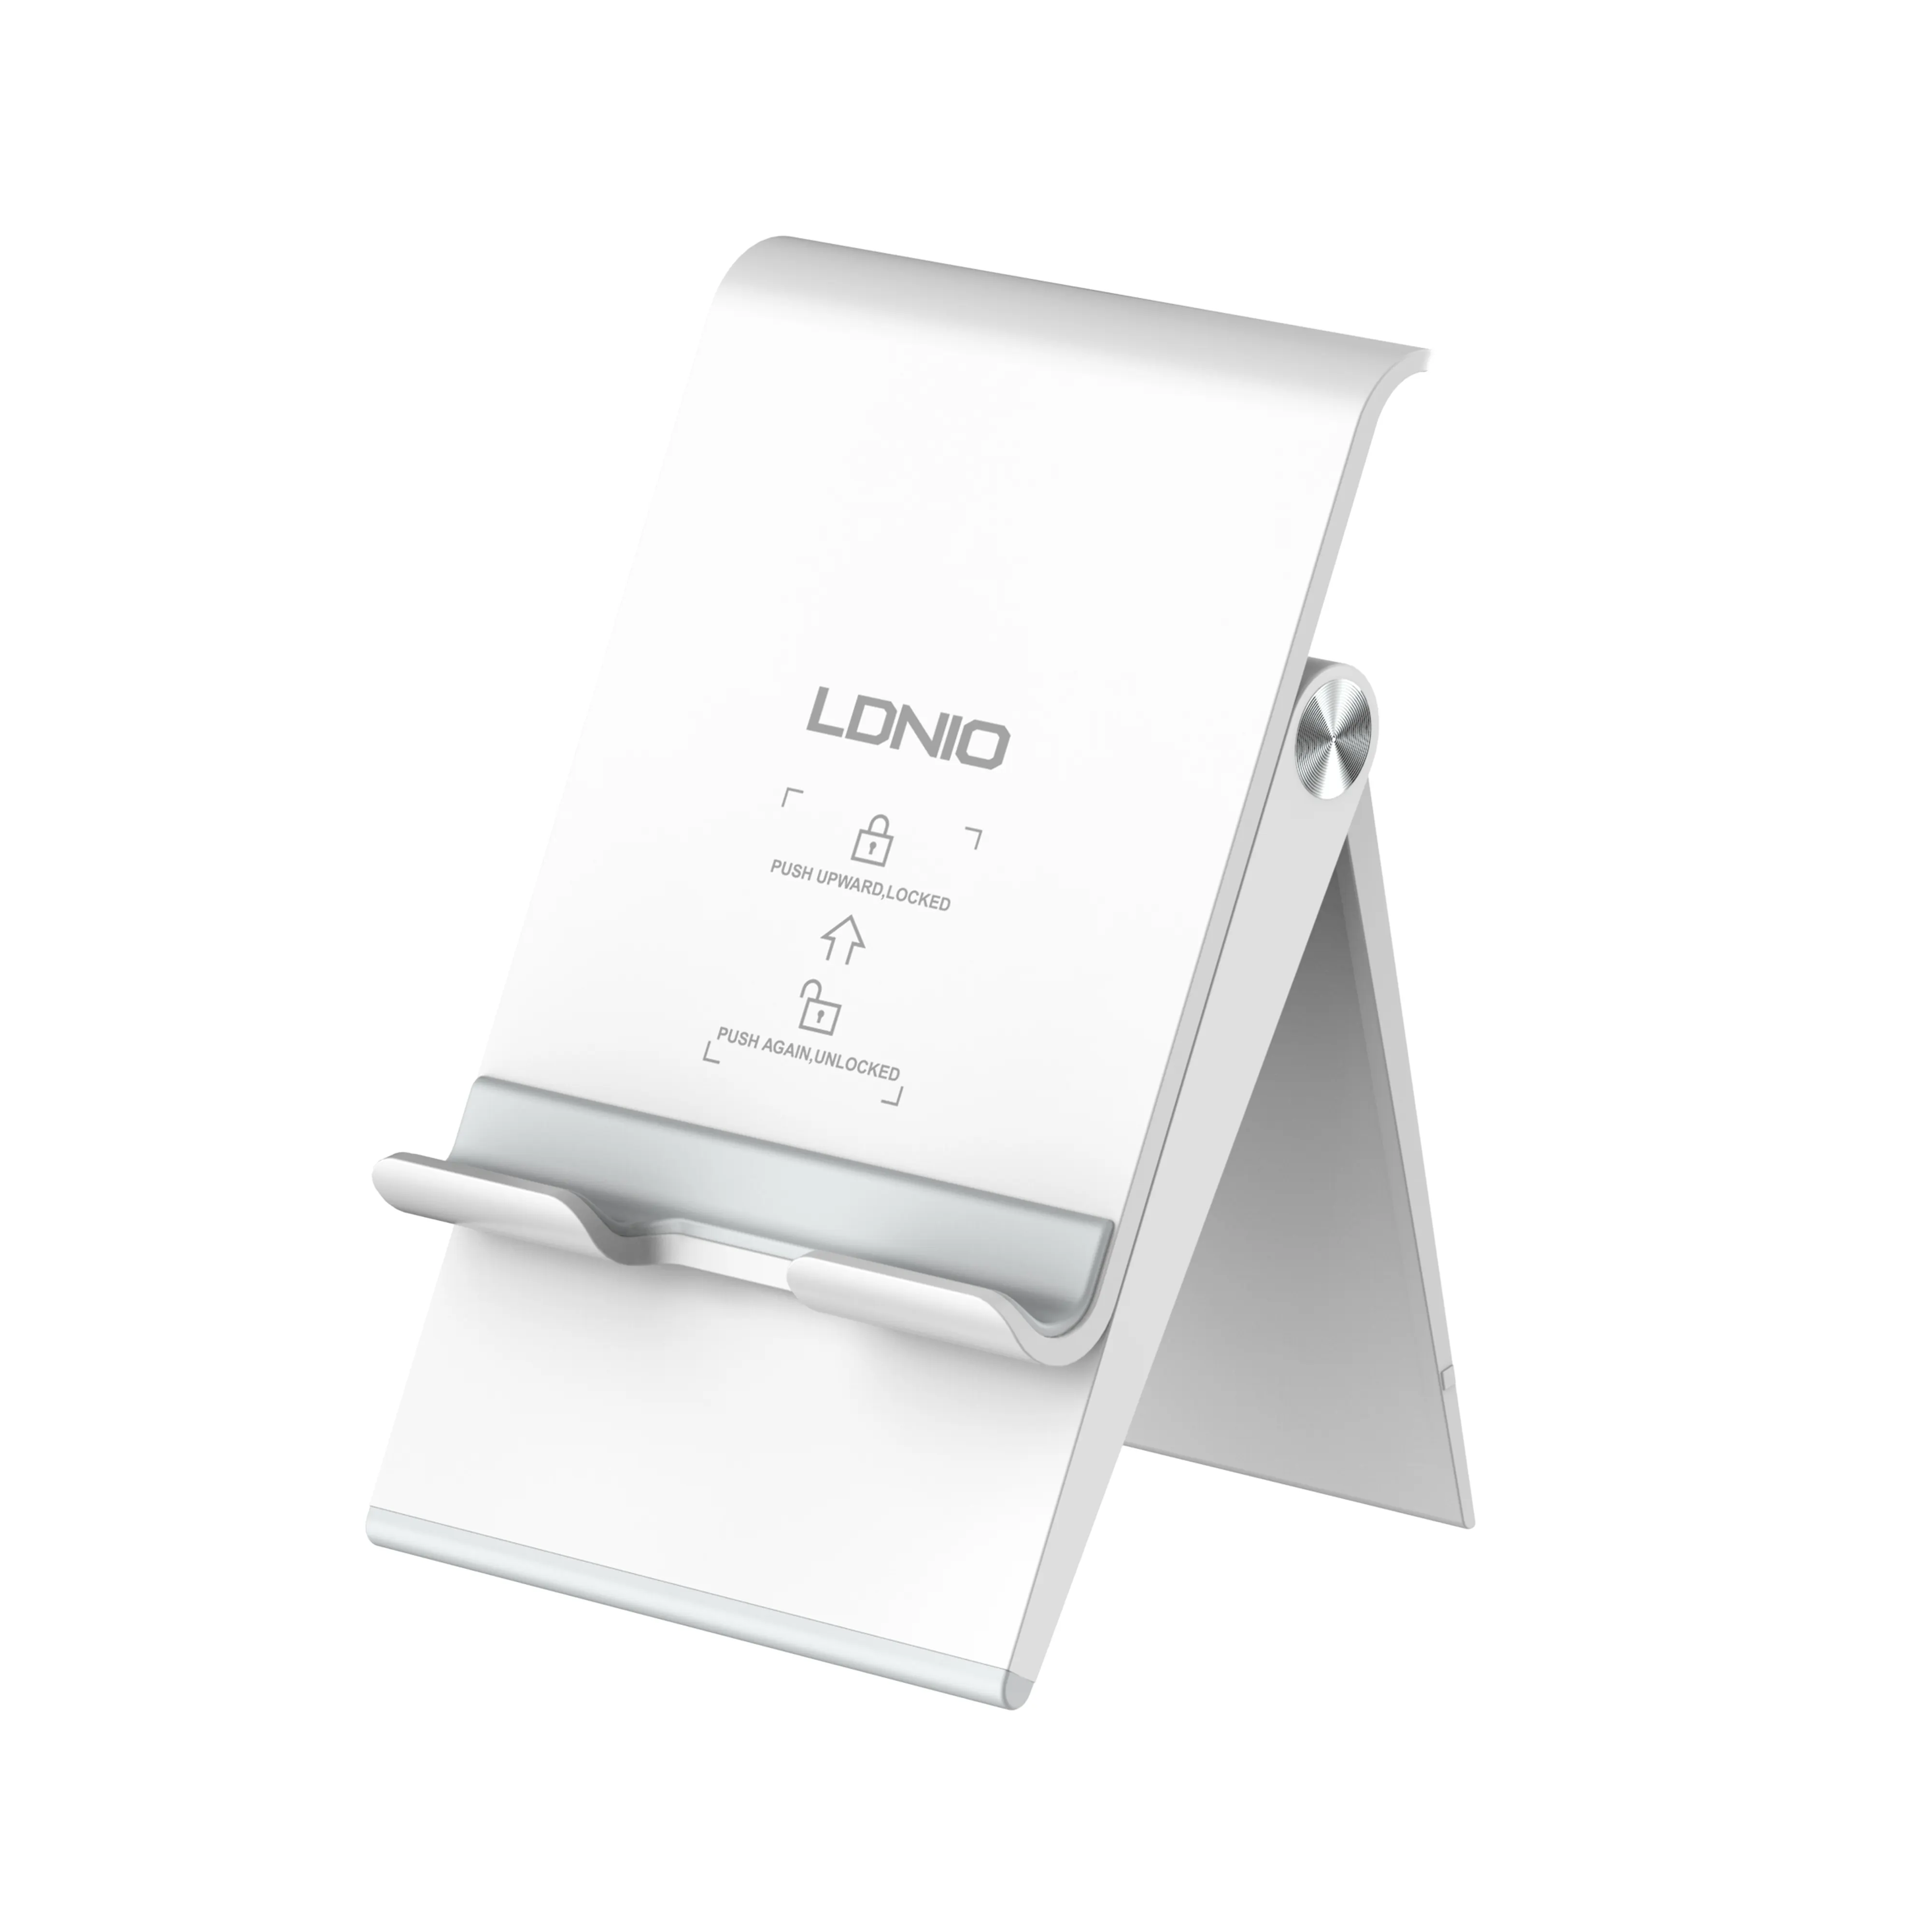 LDNIO MG07 उच्च गुणवत्ता सेलफोन डेस्कटॉप स्टैंड तह समायोज्य मोबाइल फोन धारक गोली धारक सामान